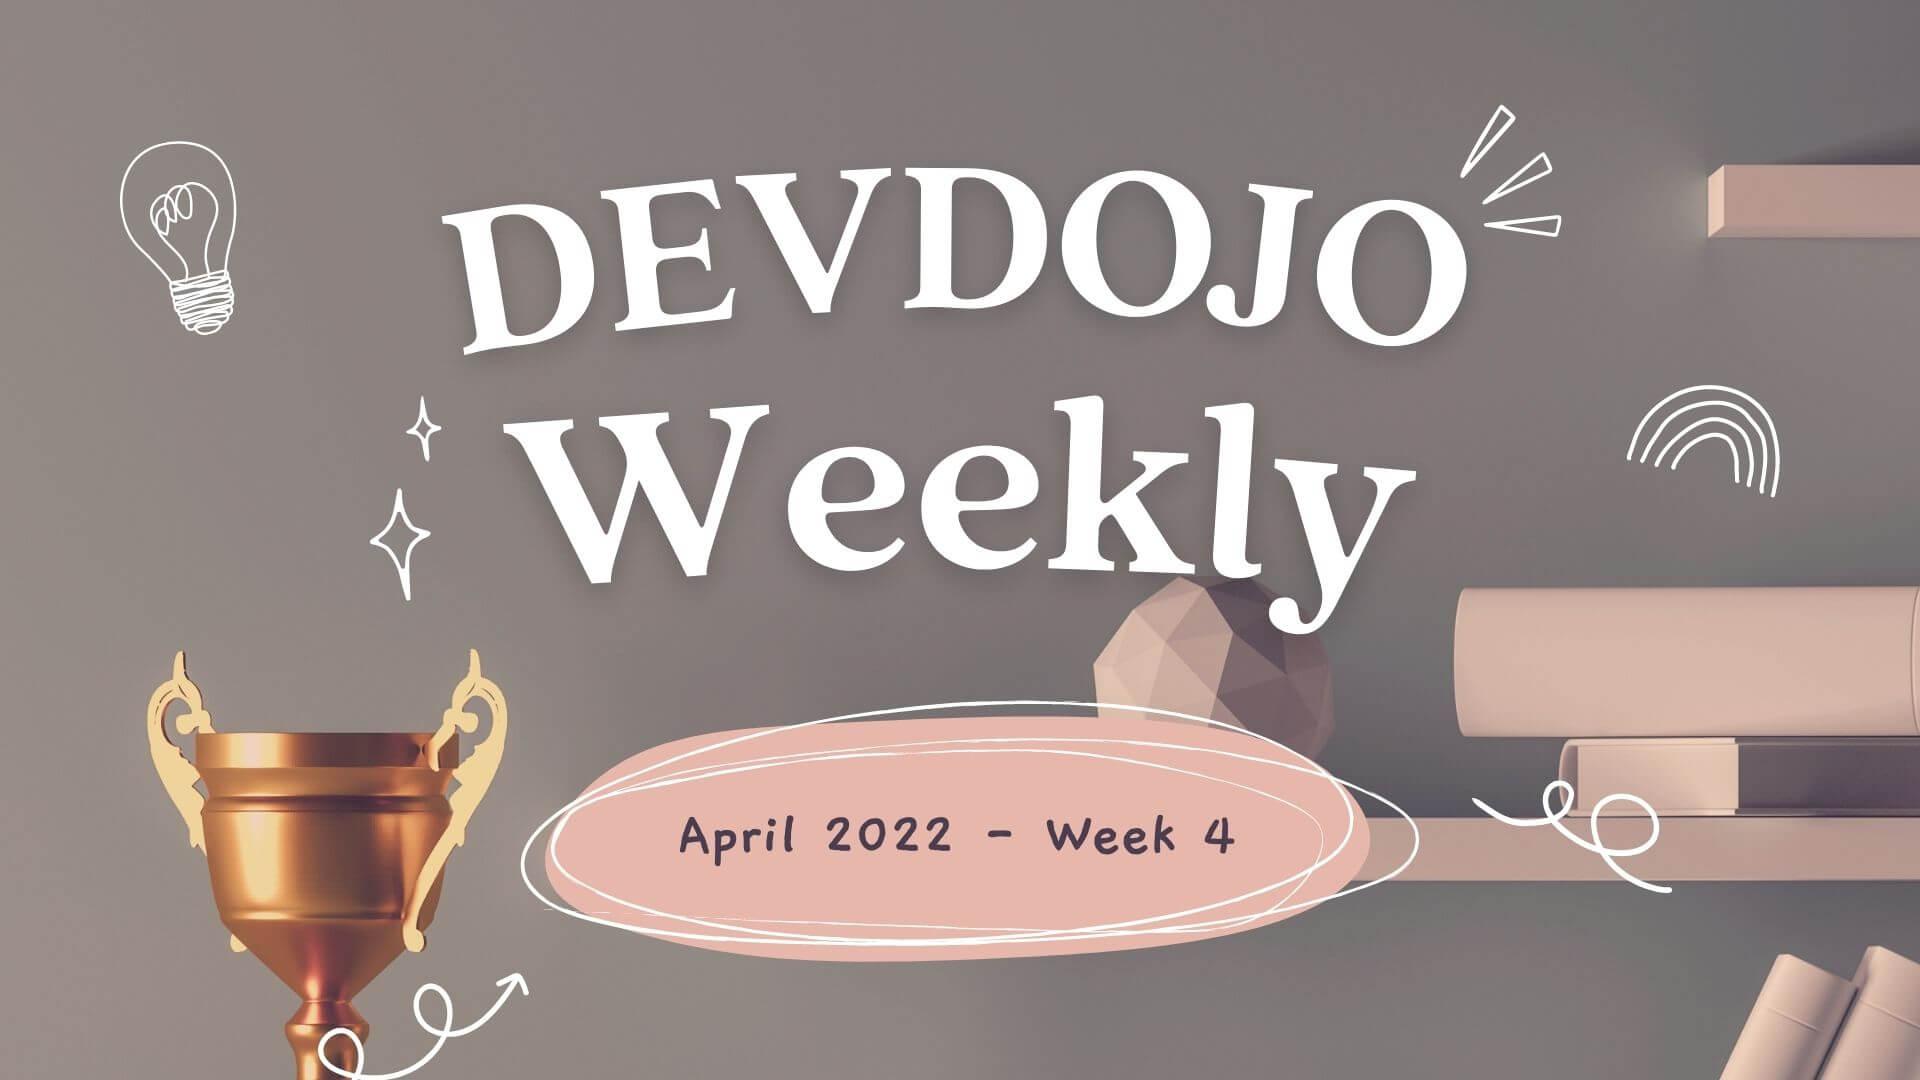 DevDojo Weekly - April 2022